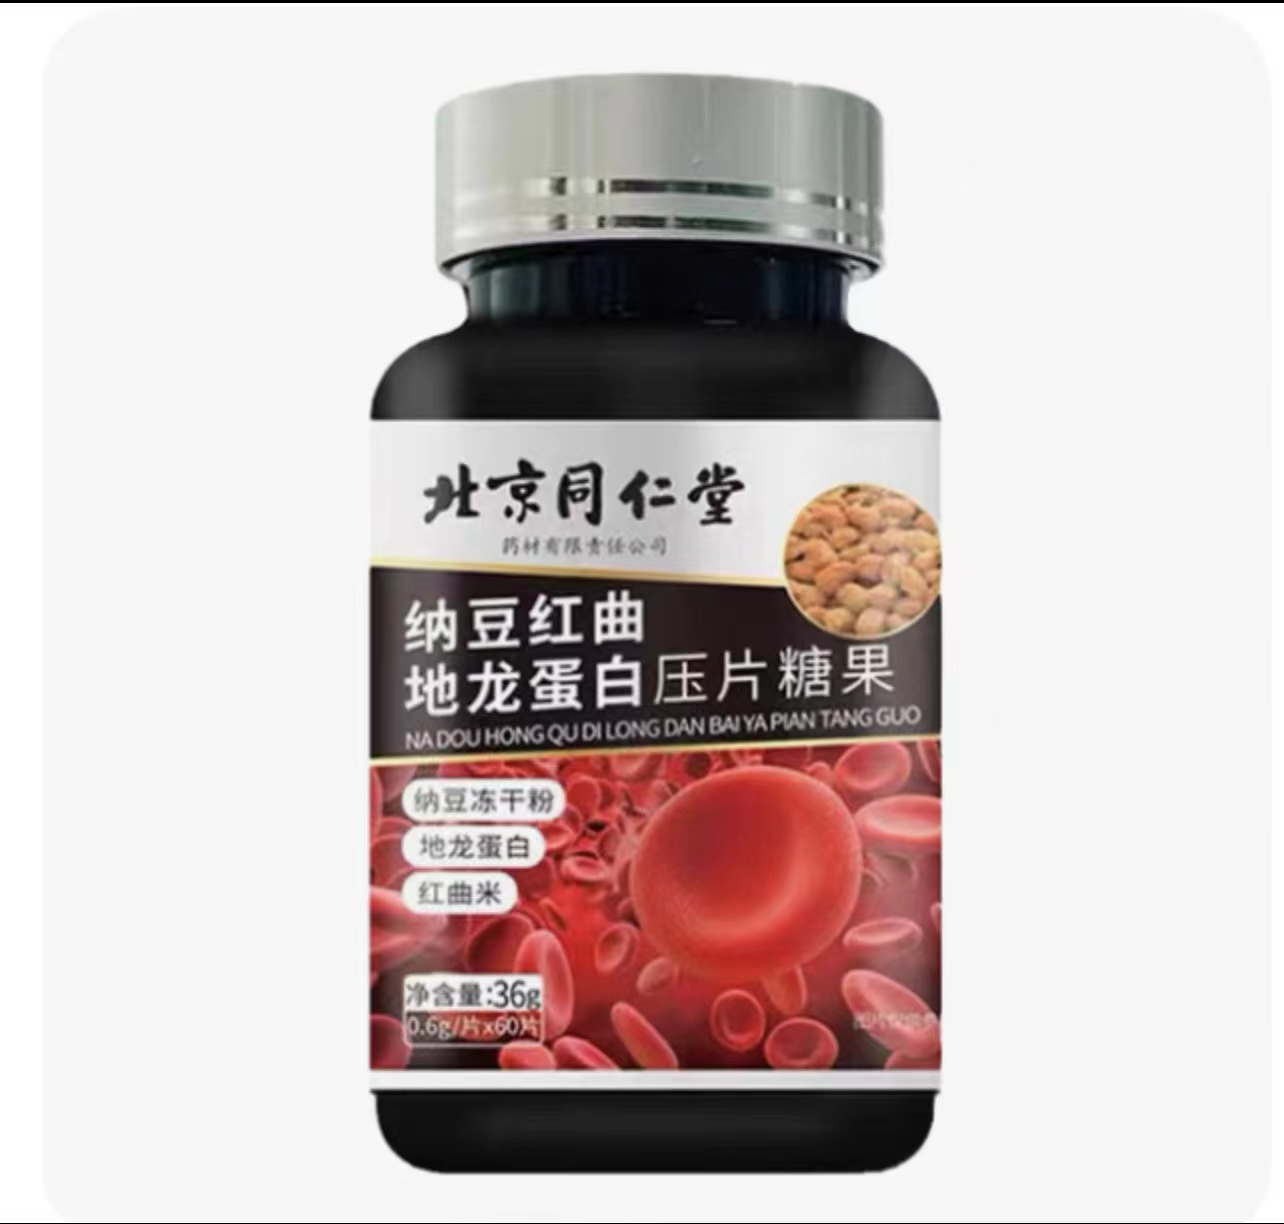 限量促销买1发2瓶北京同仁堂纳豆红曲地龙蛋白片日本纳豆激酶